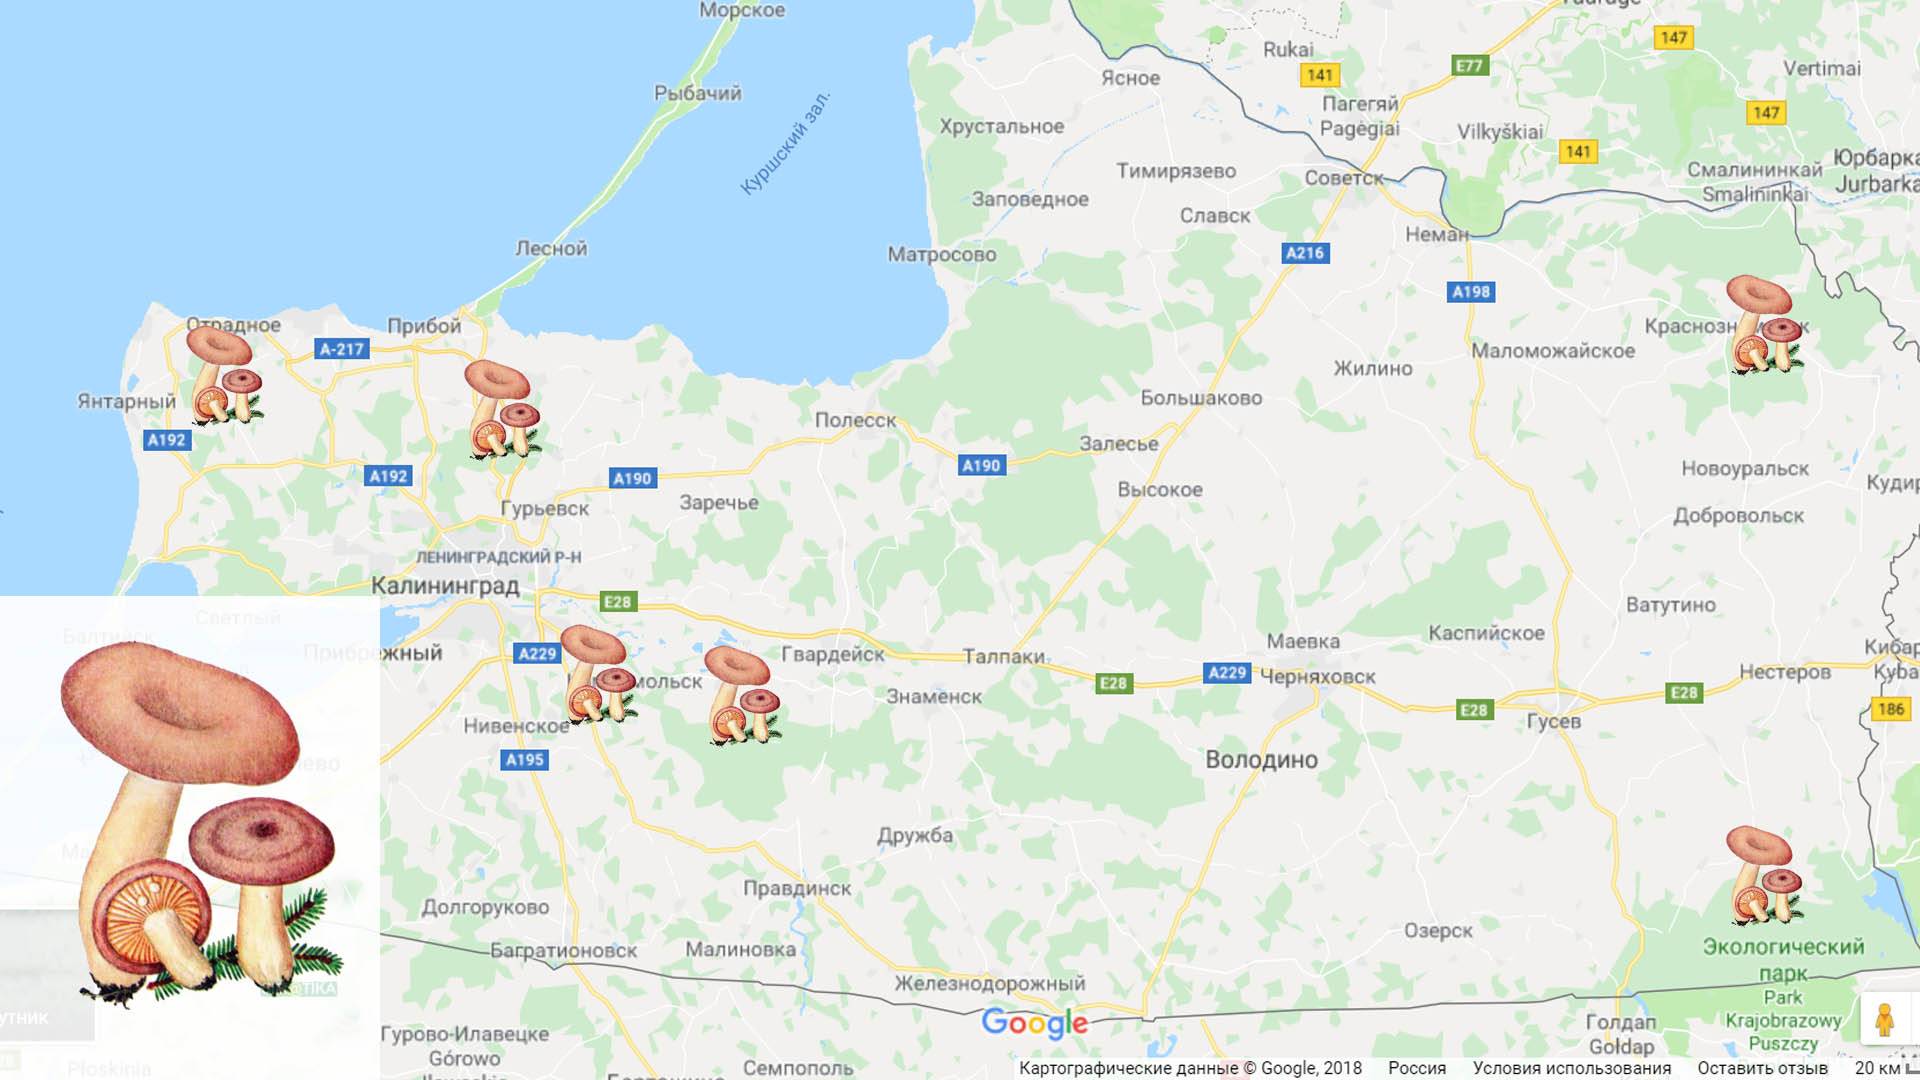 Грибы белгородской области в 2020: названия съедобных и ядовитых, фото, карта грибных мест